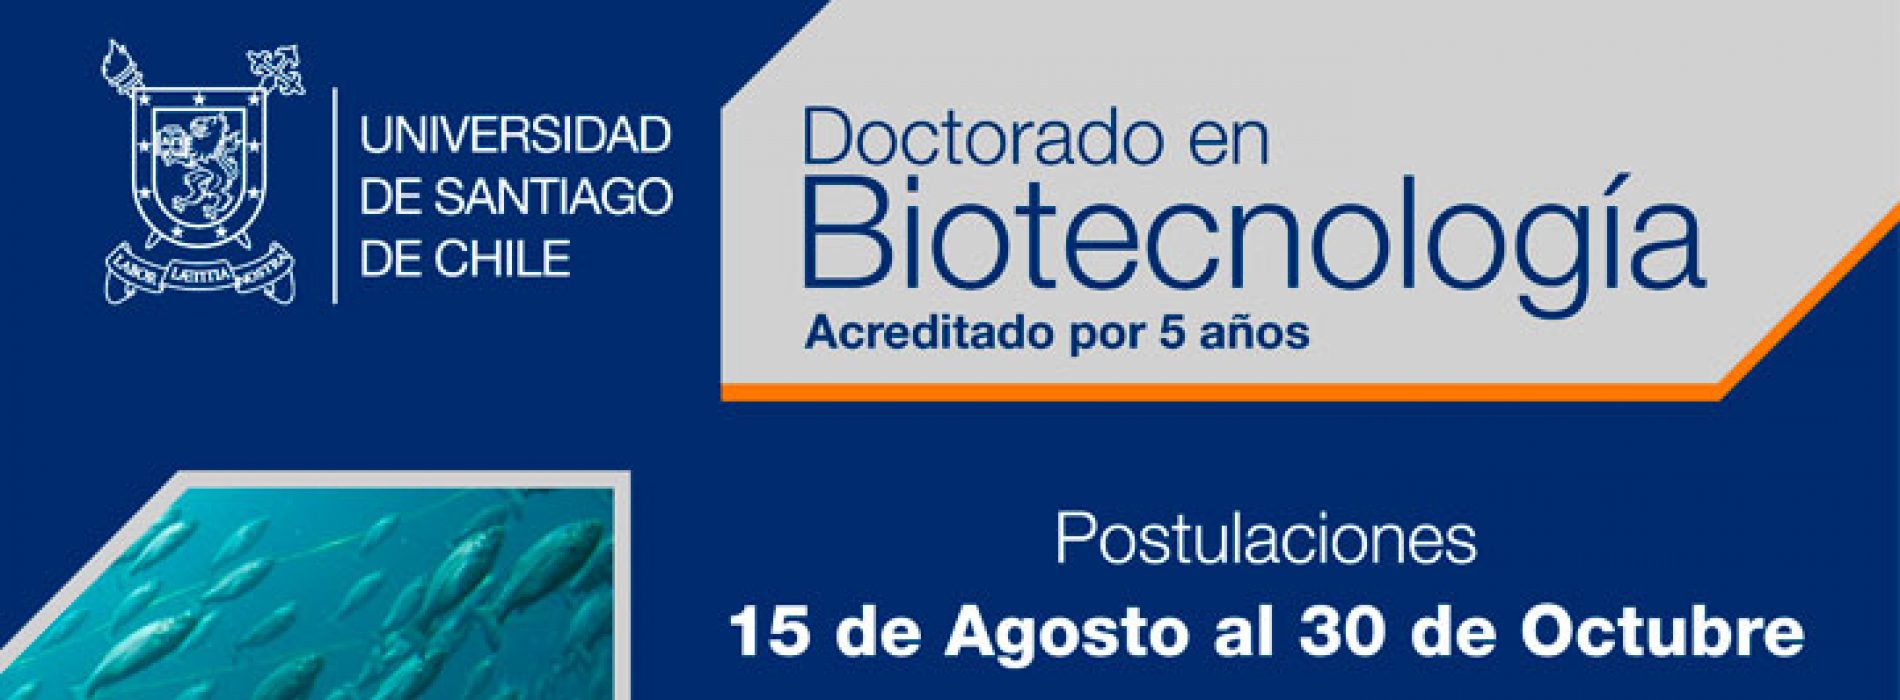 PhD in biotechnology